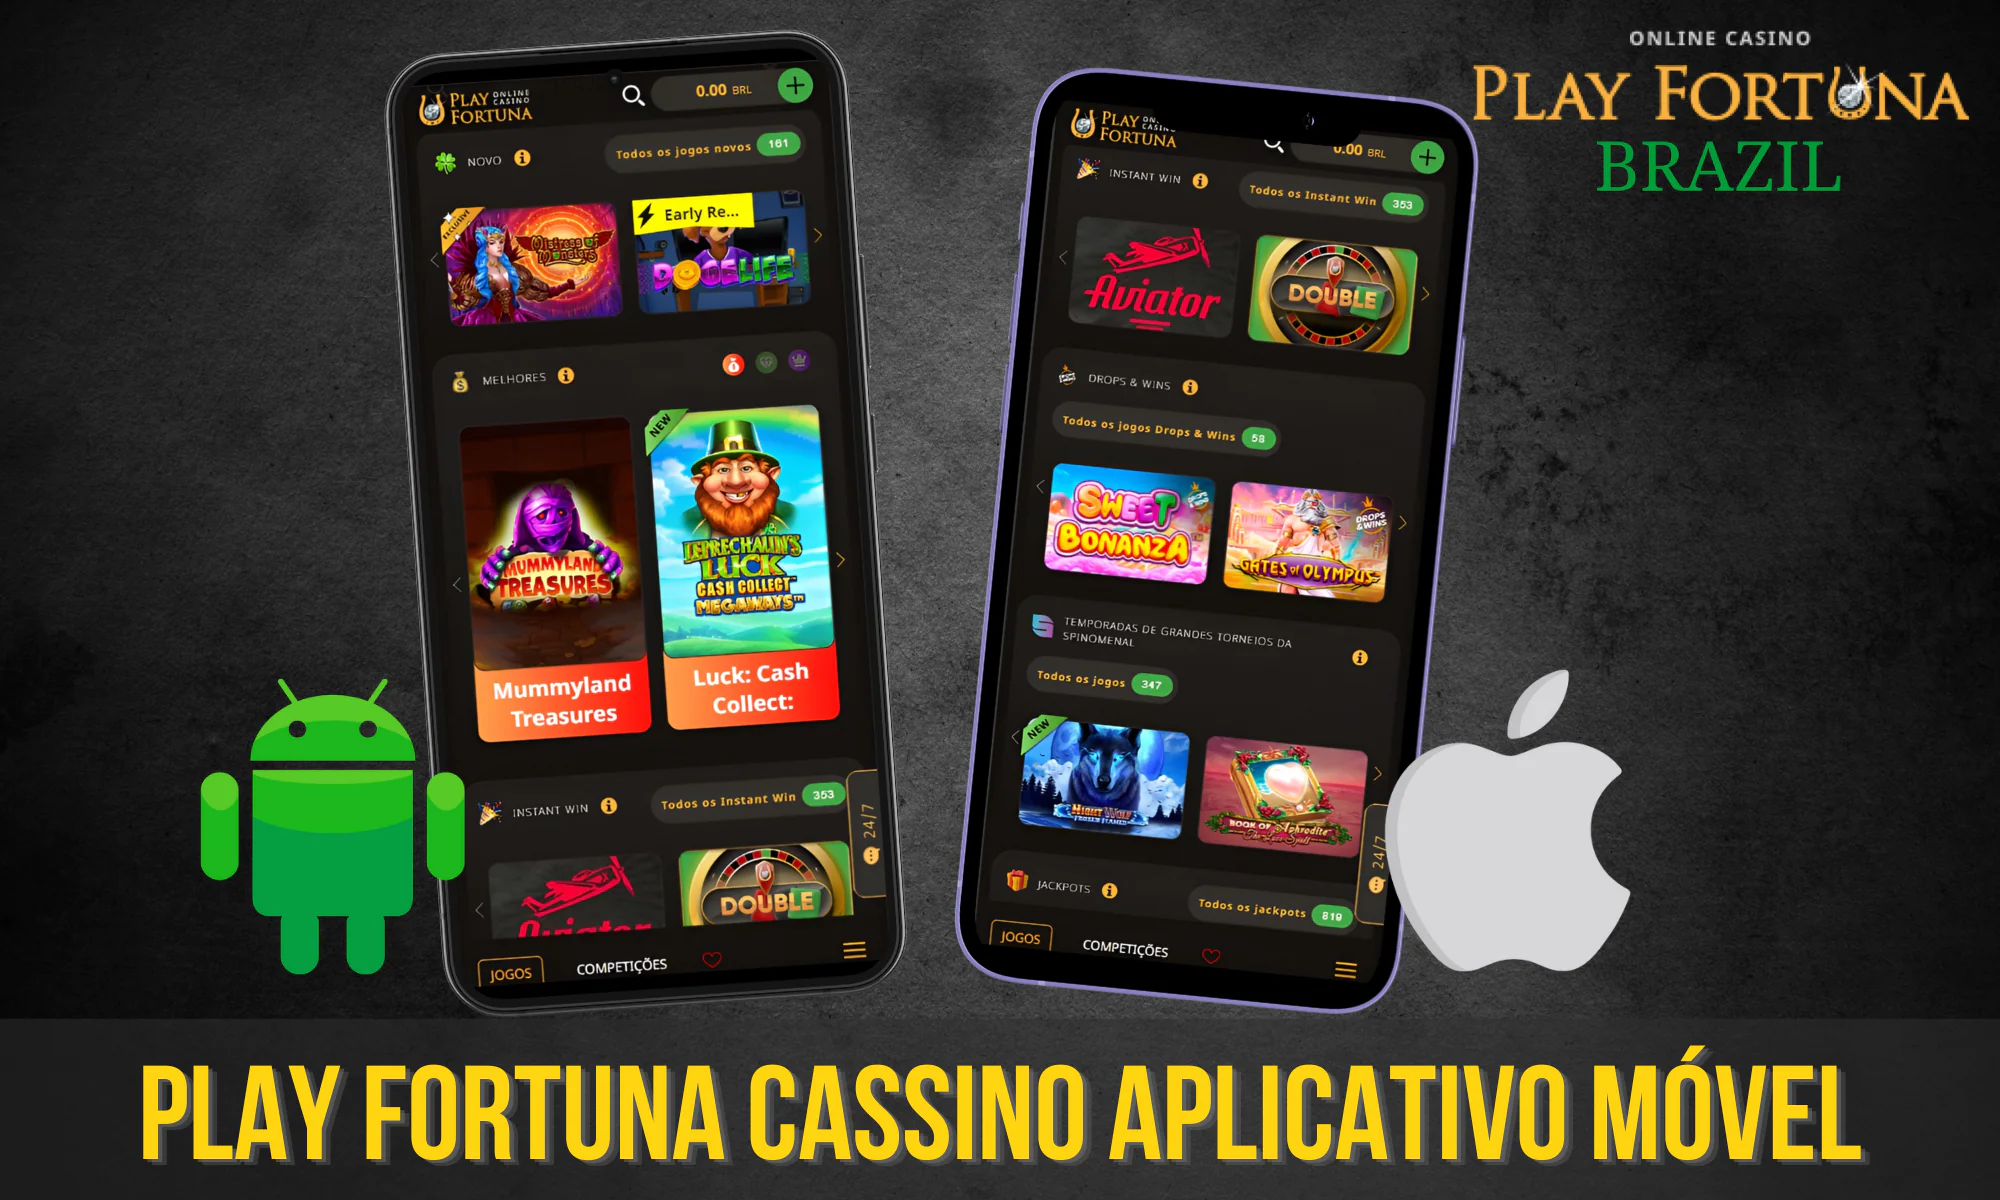 O Play Fortuna tem um aplicativo móvel especialmente projetado e bem otimizado